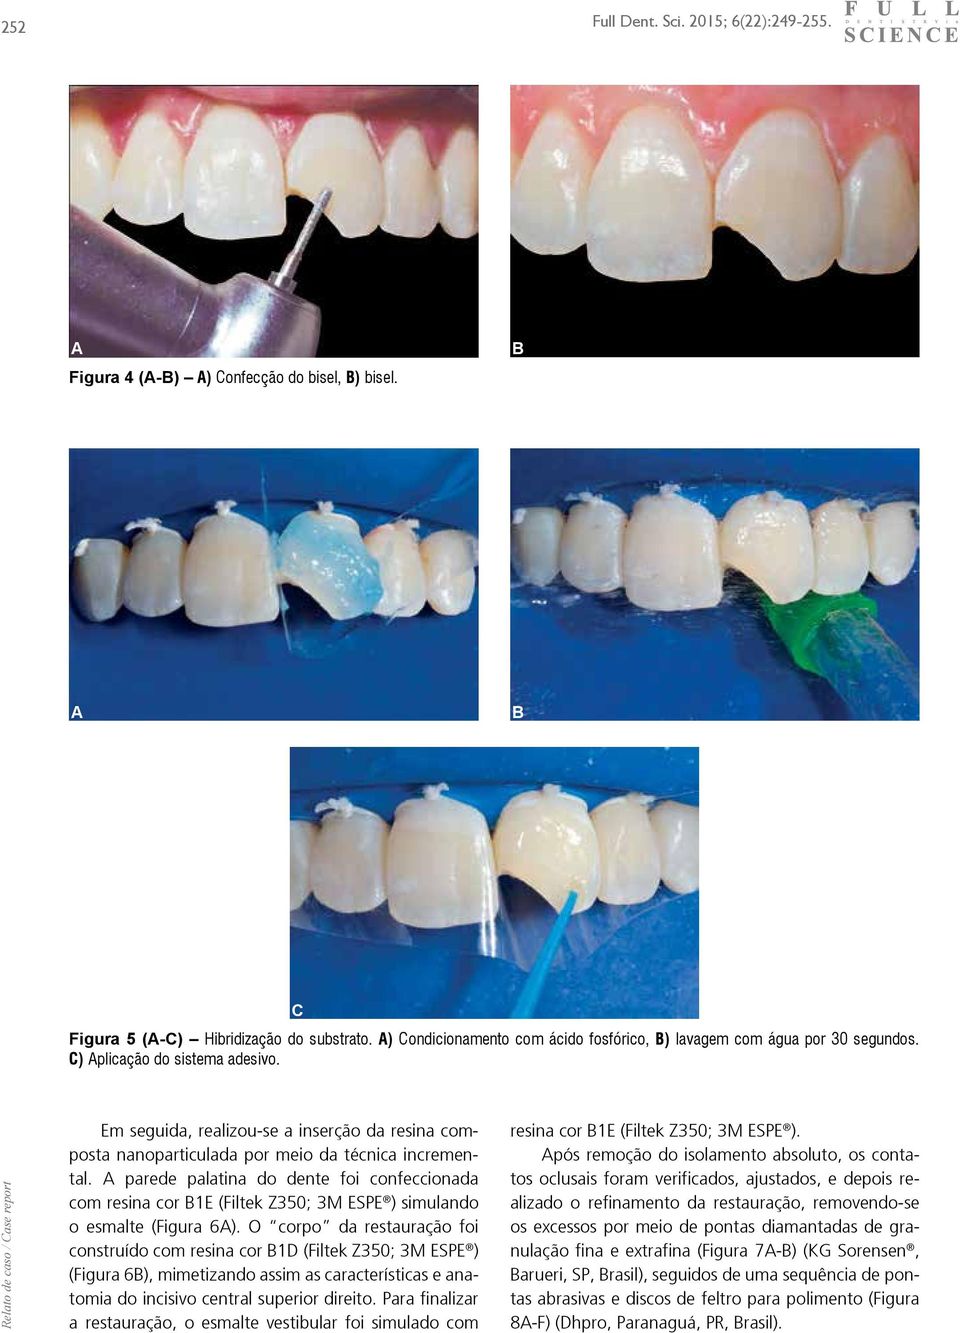 A prede pltin do dente foi confecciond com resin cor 1E (Filtek Z350; 3M ESPE ) simulndo o esmlte (Figur 6A).